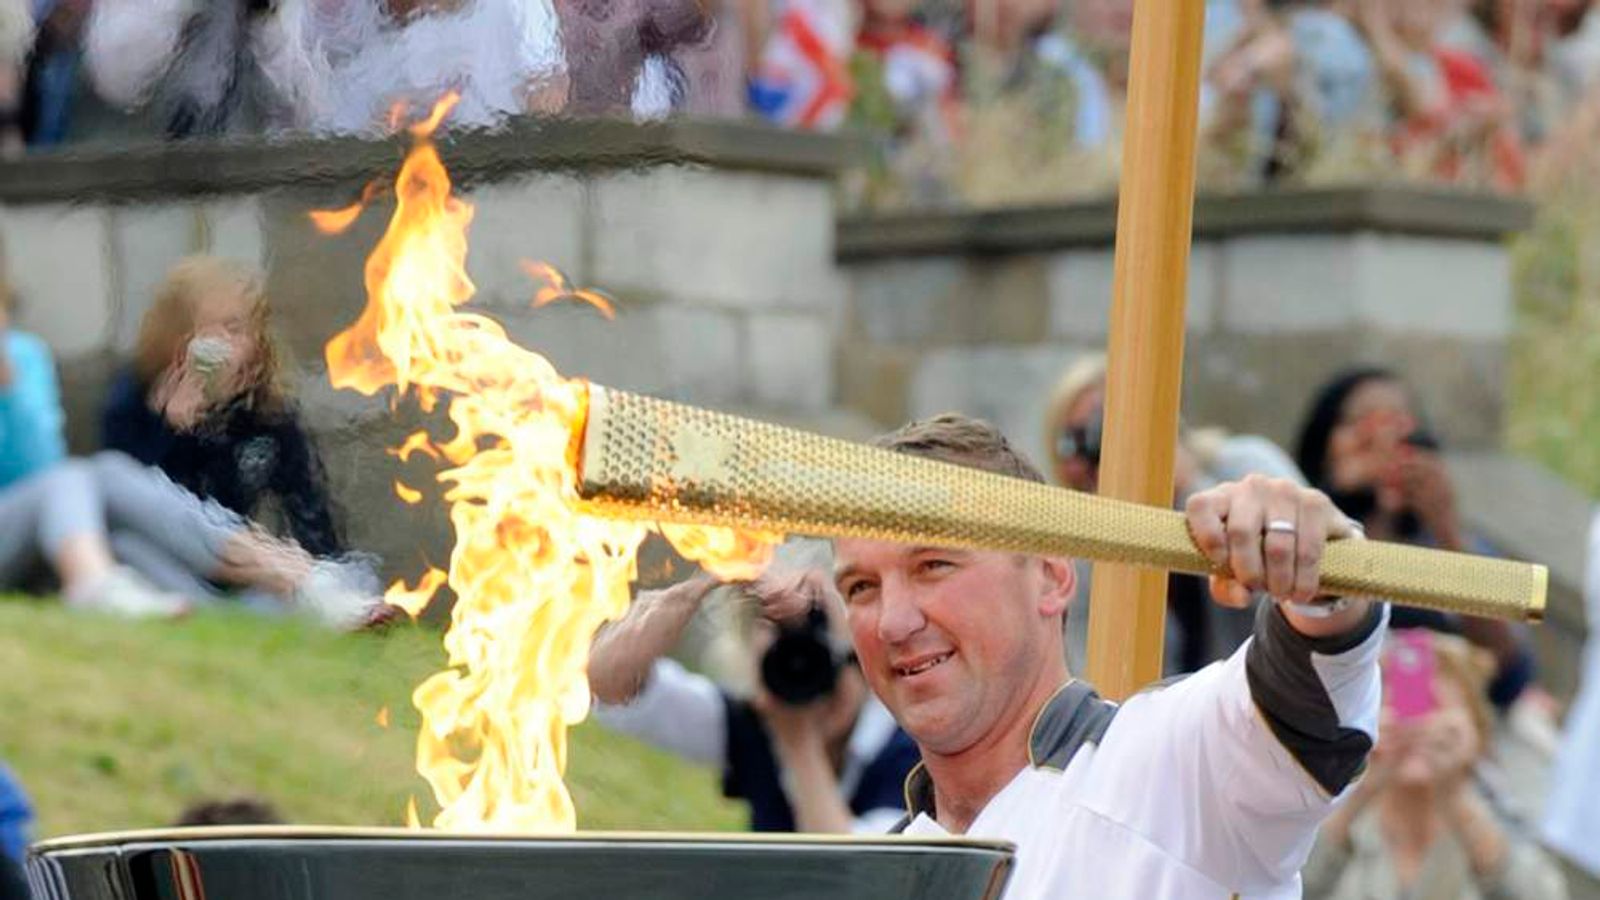 Олимпийский огонь современных игр зажигается. Зажжение олимпийского огня в Барселоне 1992. Факел олимпийского огня современных игр зажигается. Зажжение олимпийского огня в Афинах.